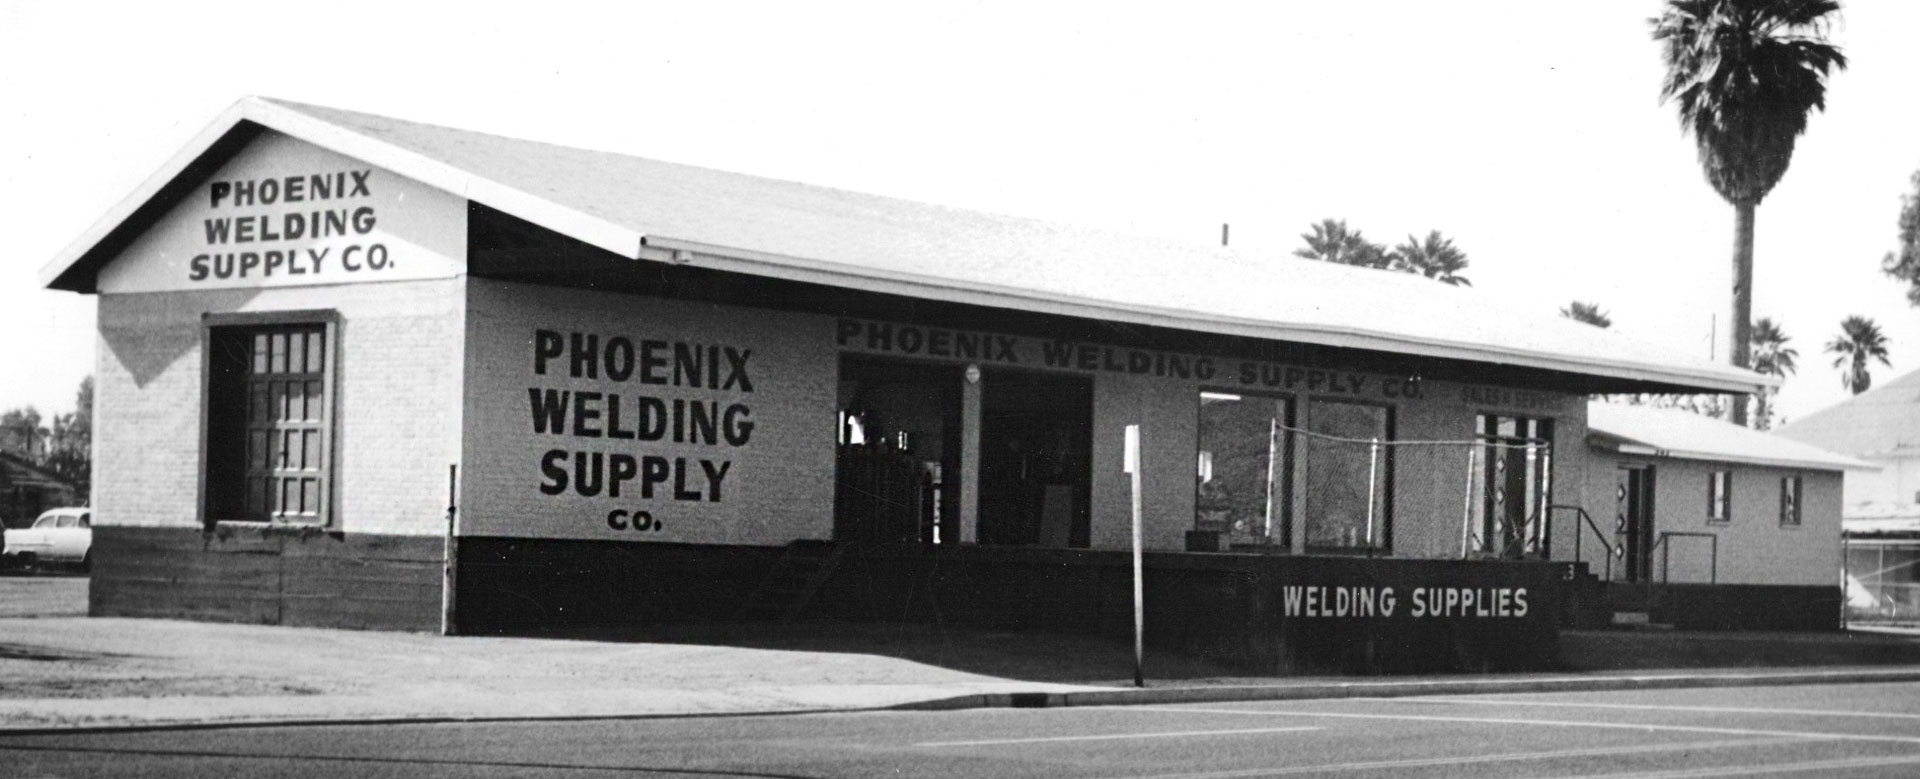 phoenix welding supply 1953